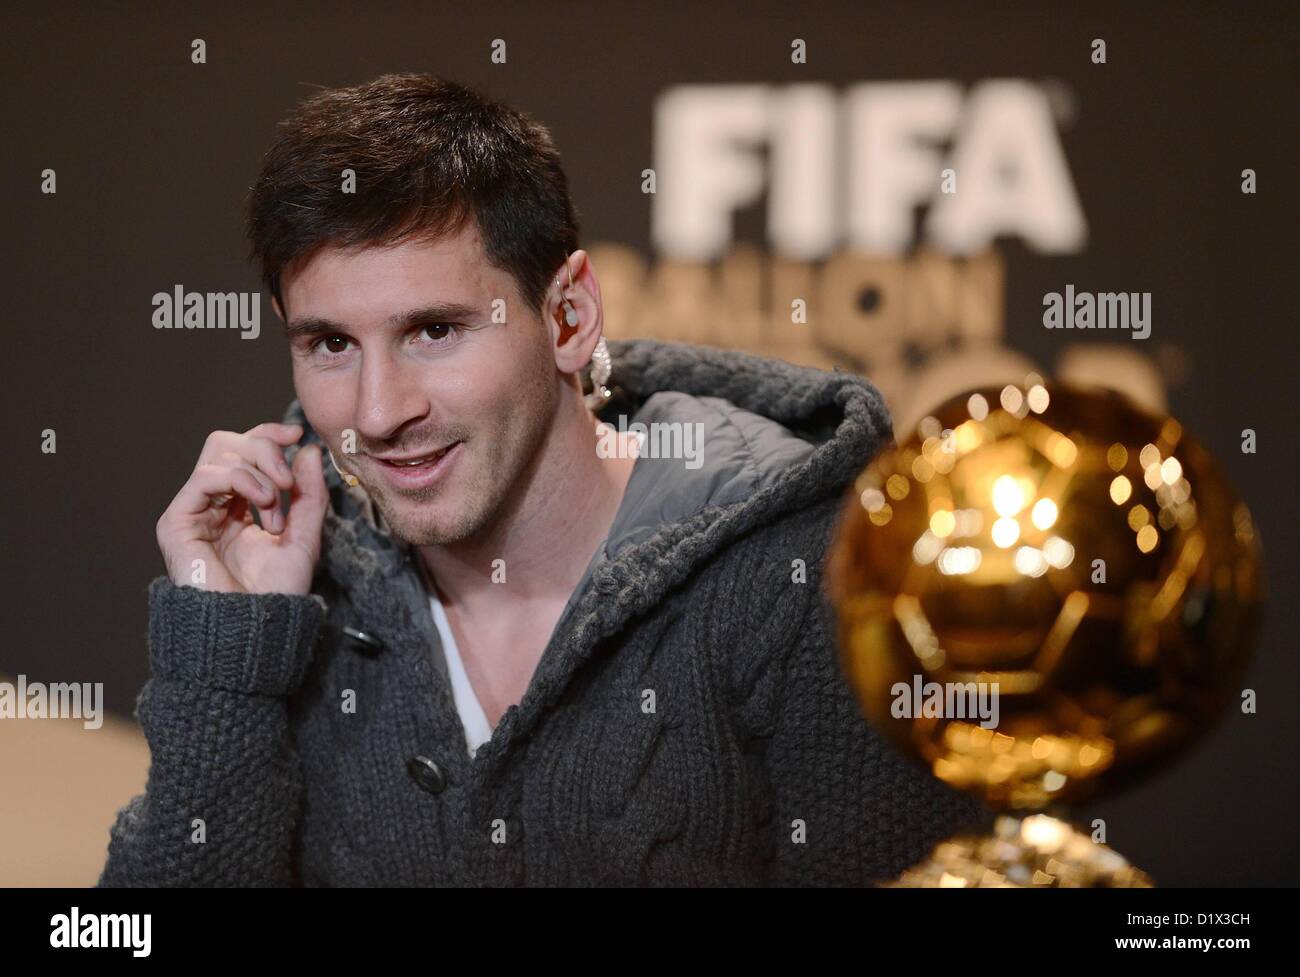 06 01 2013 Partita internazionale di calcio FIFA Pallone D'Or calciatore mondiale 2012 conferenza stampa. Lionel Messi Argentina Foto Stock